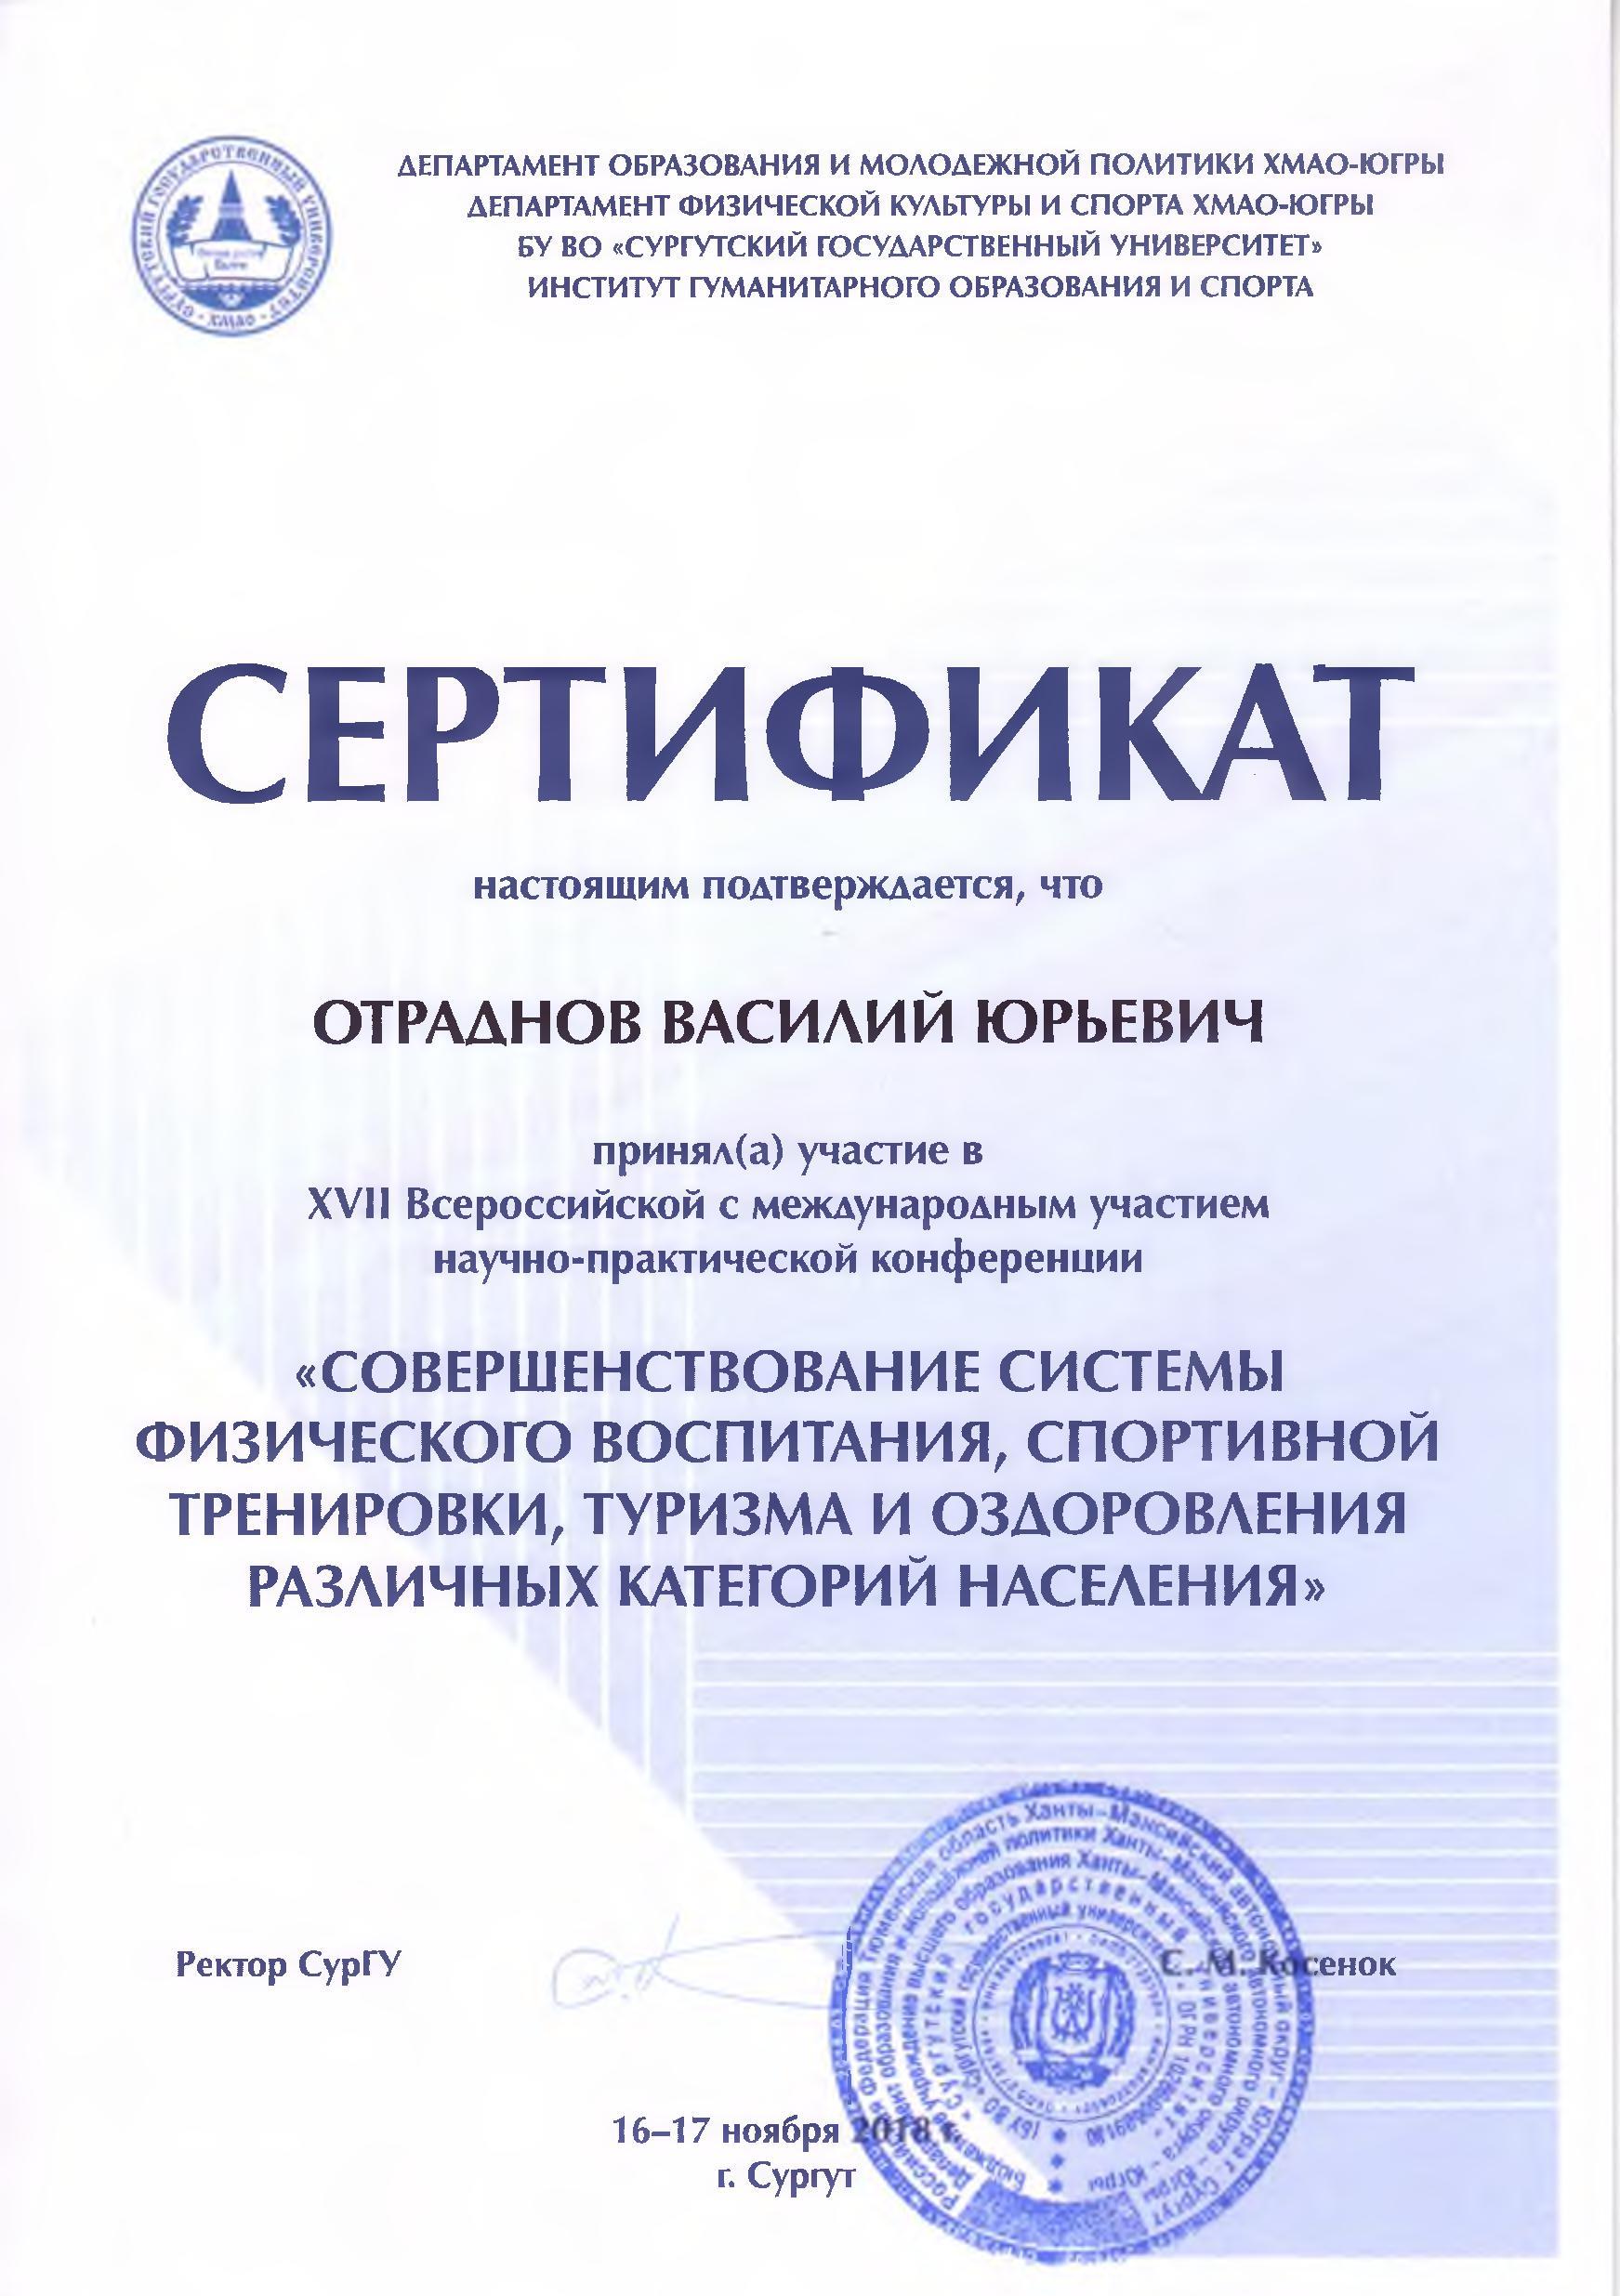 Сертификат участника XVII Всероссийской с международным участием научно-практической конференции